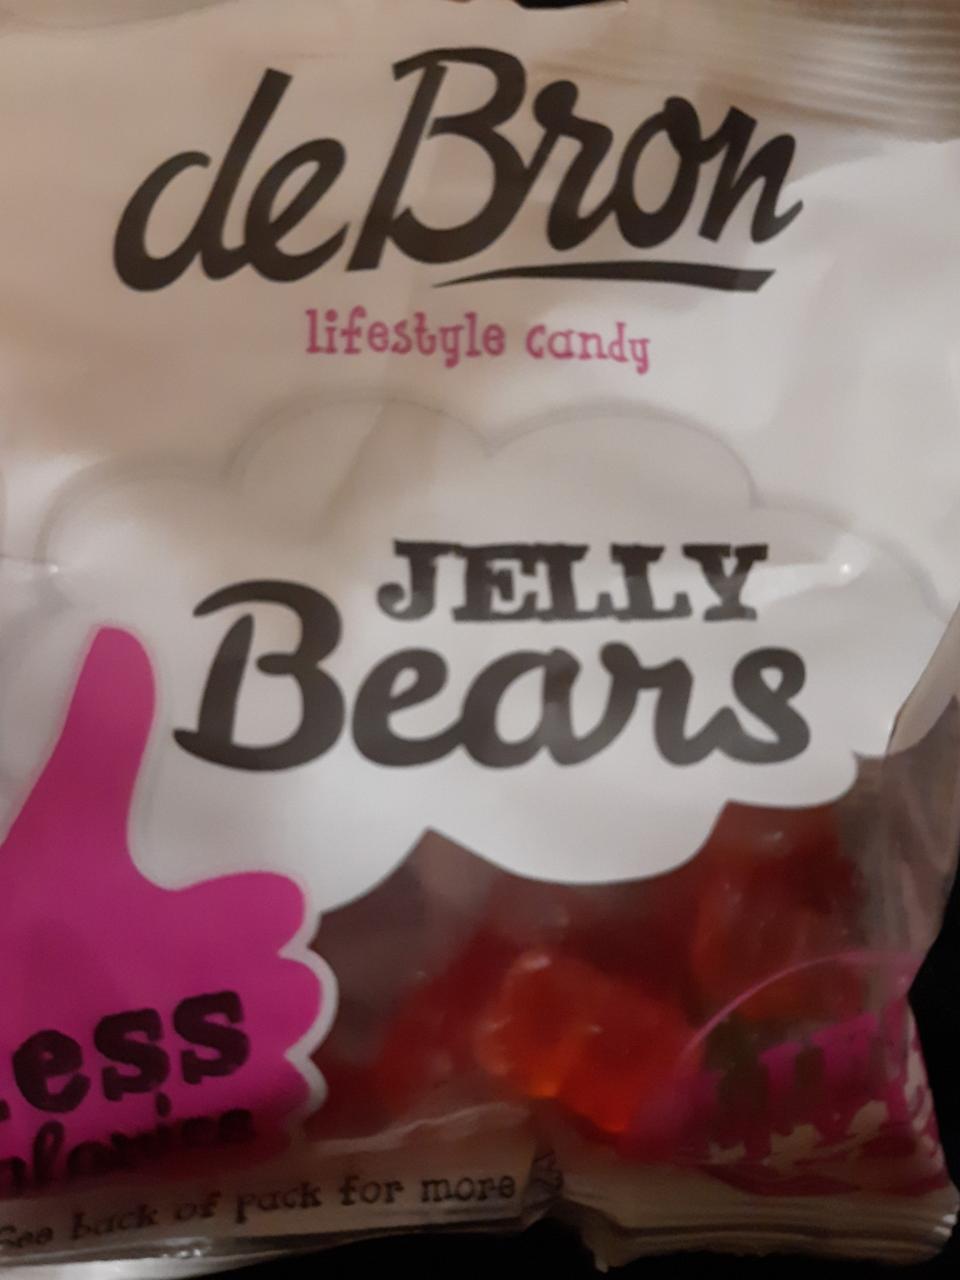 Fotografie - deBron jelly bears